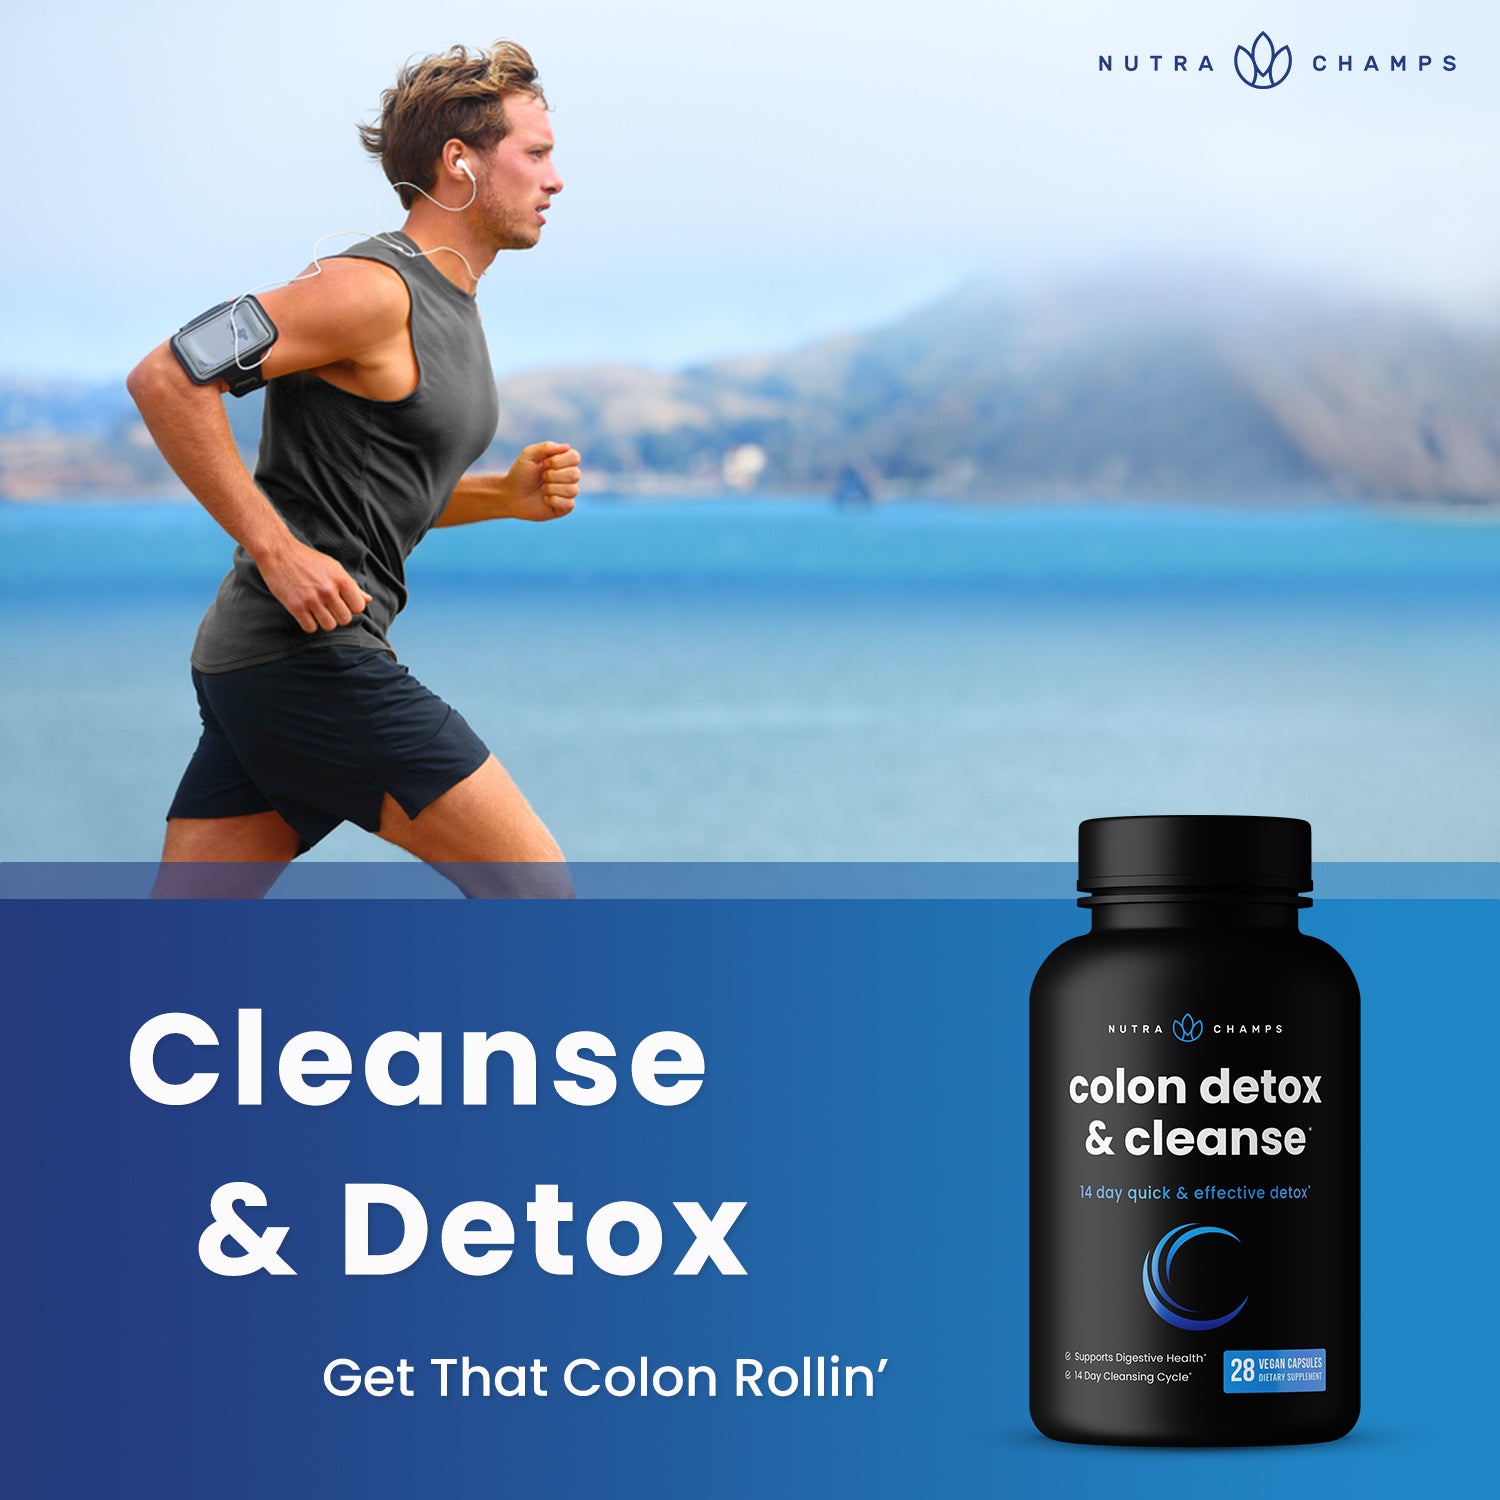 Colon Detox & Cleanse